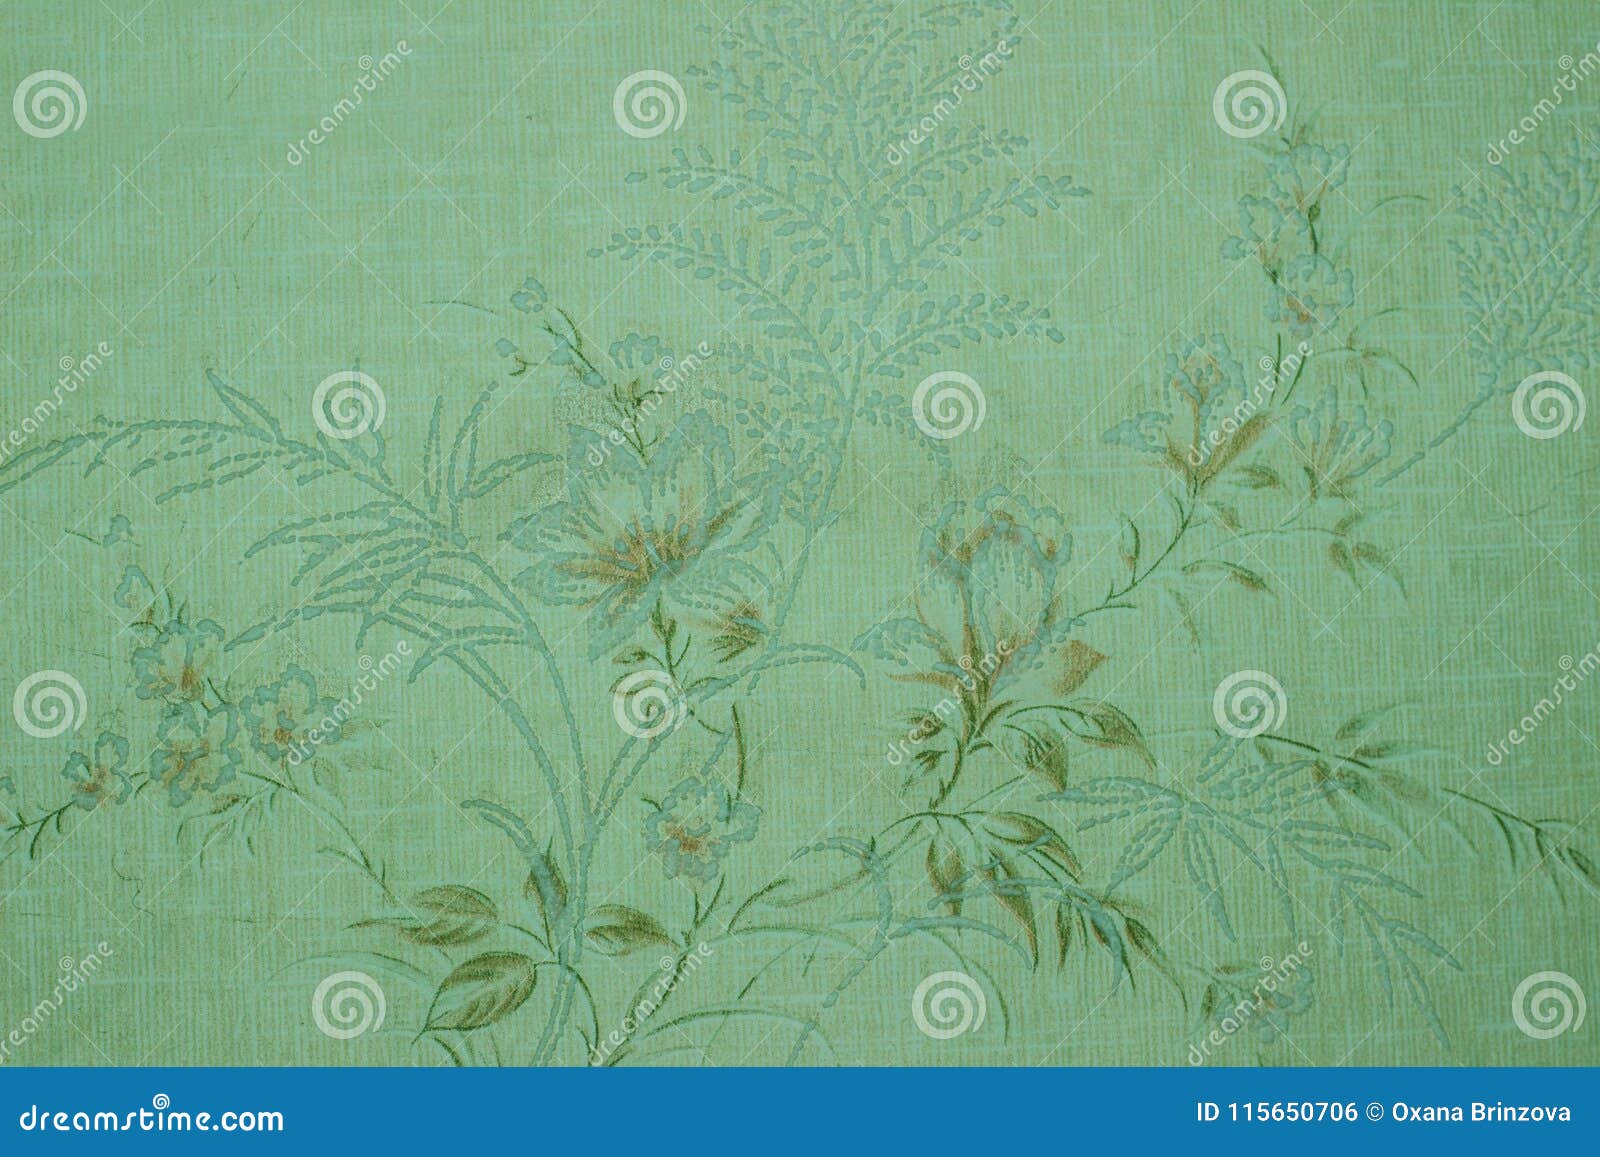 Mở ra không gian thanh lịch và đẳng cấp với hình nền xanh vintage hoa văn Victorian. Màu sắc đậm chất cổ điển kết hợp với những hoa văn tinh xảo, hình nền sẽ mang đến cho bạn sự sang trọng và tự tin.